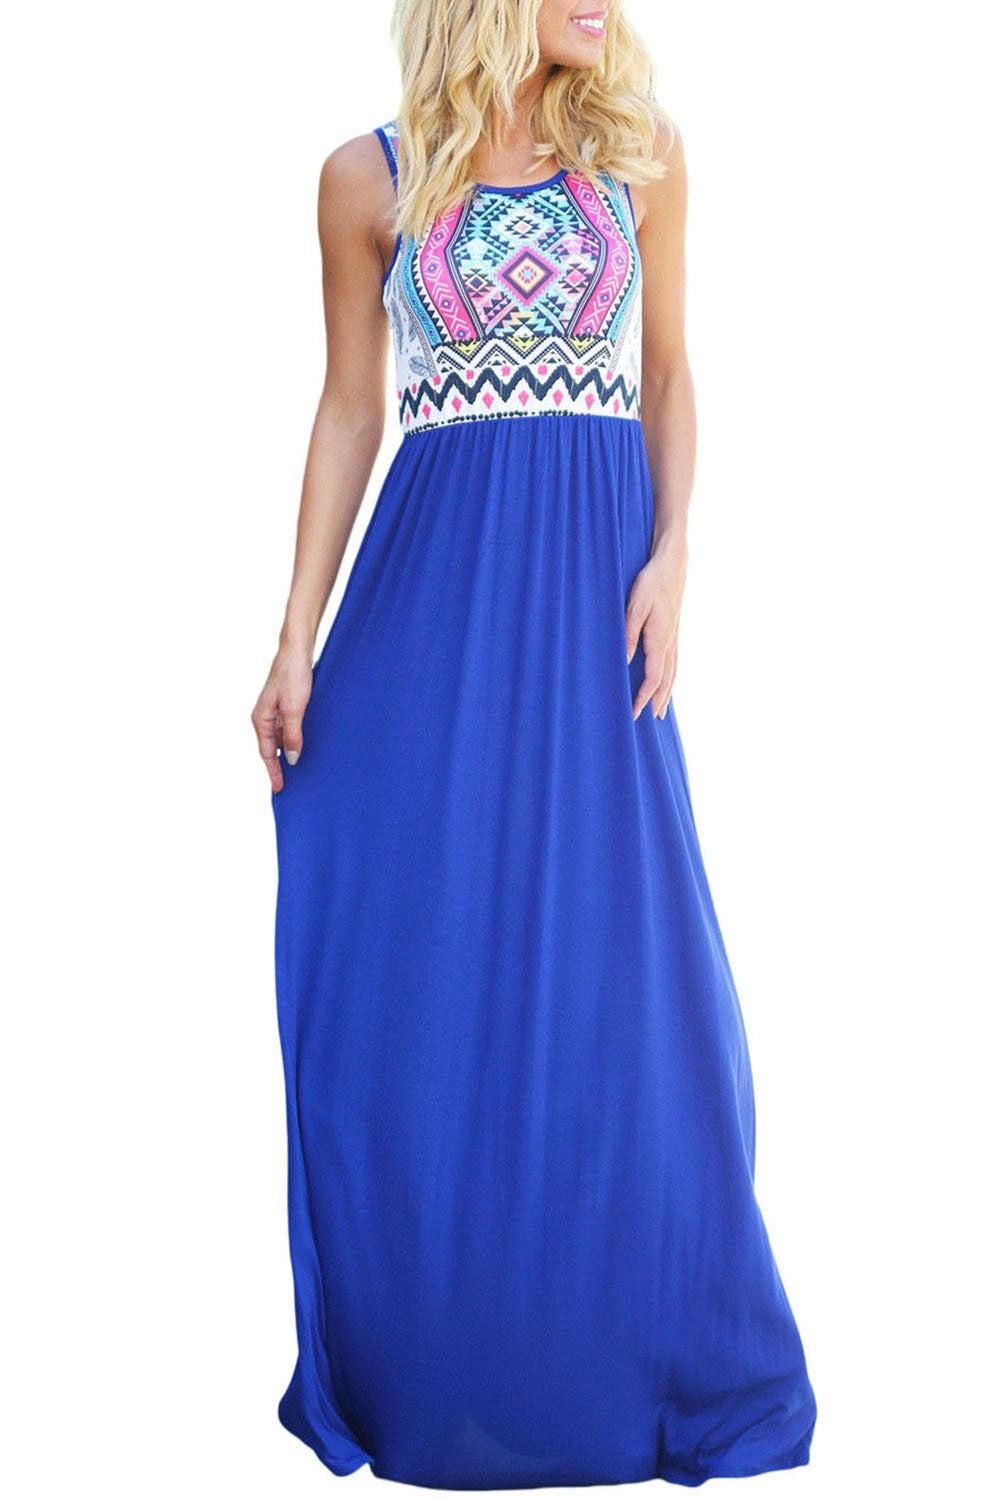 Aztec Print Sleeveless Royal Blue Maxi Dress